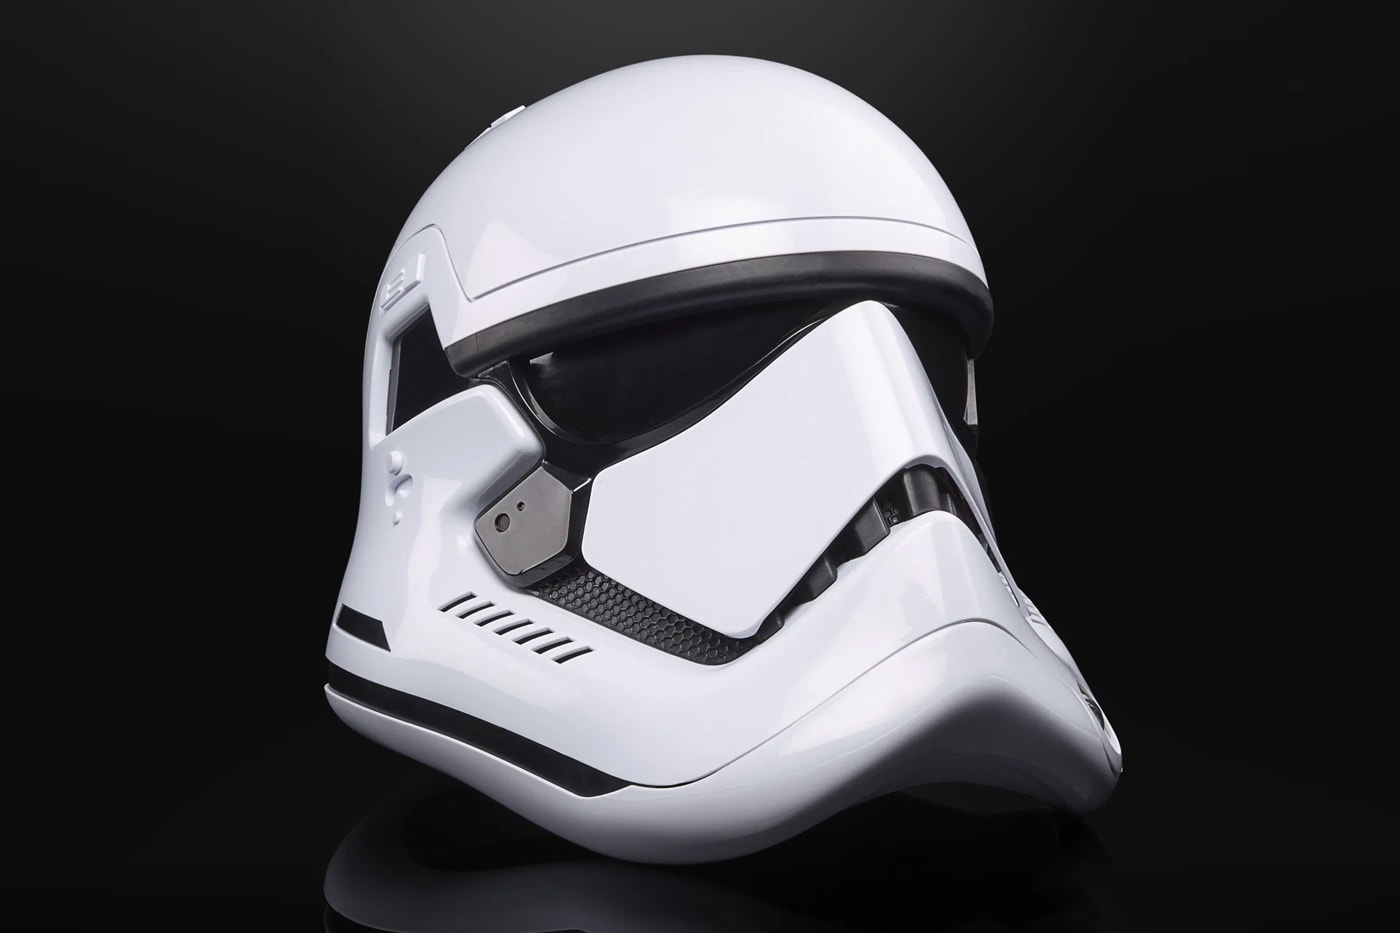 『スター・ウォーズ』のストーム・トルーパーのヘルメットを再現したプロダクトが登場 Hasbro Star Wars The Black Series Stormtrooper Helmet toys pre order release info lucasfilms hasbro pulse 